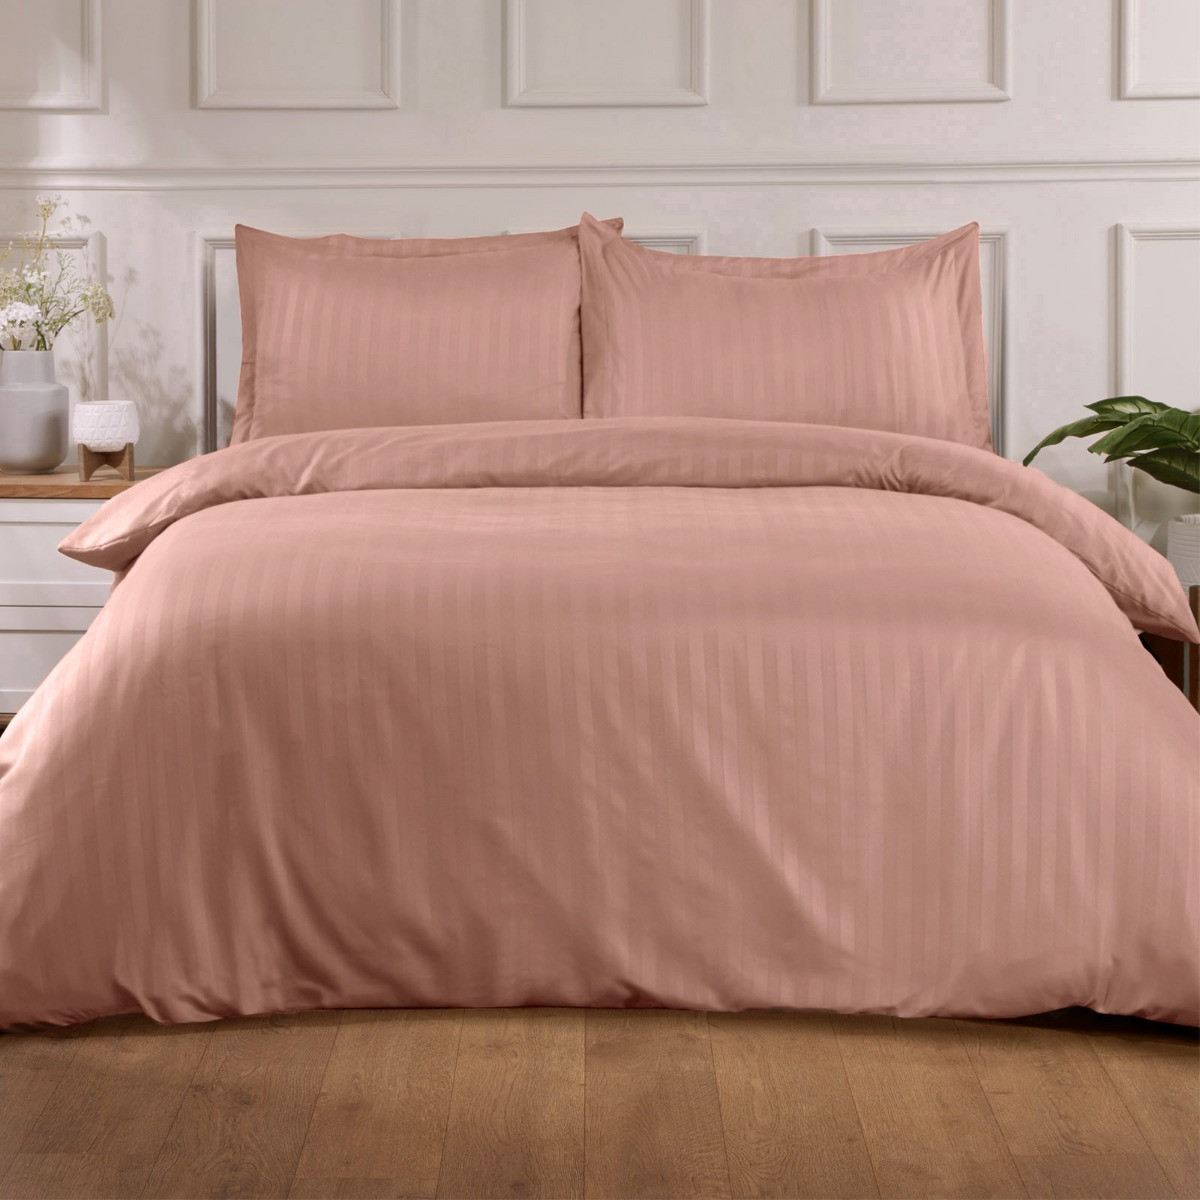 Brentfords Satin Stripe Duvet Super King Cover with Pillow Case Set - Pink>